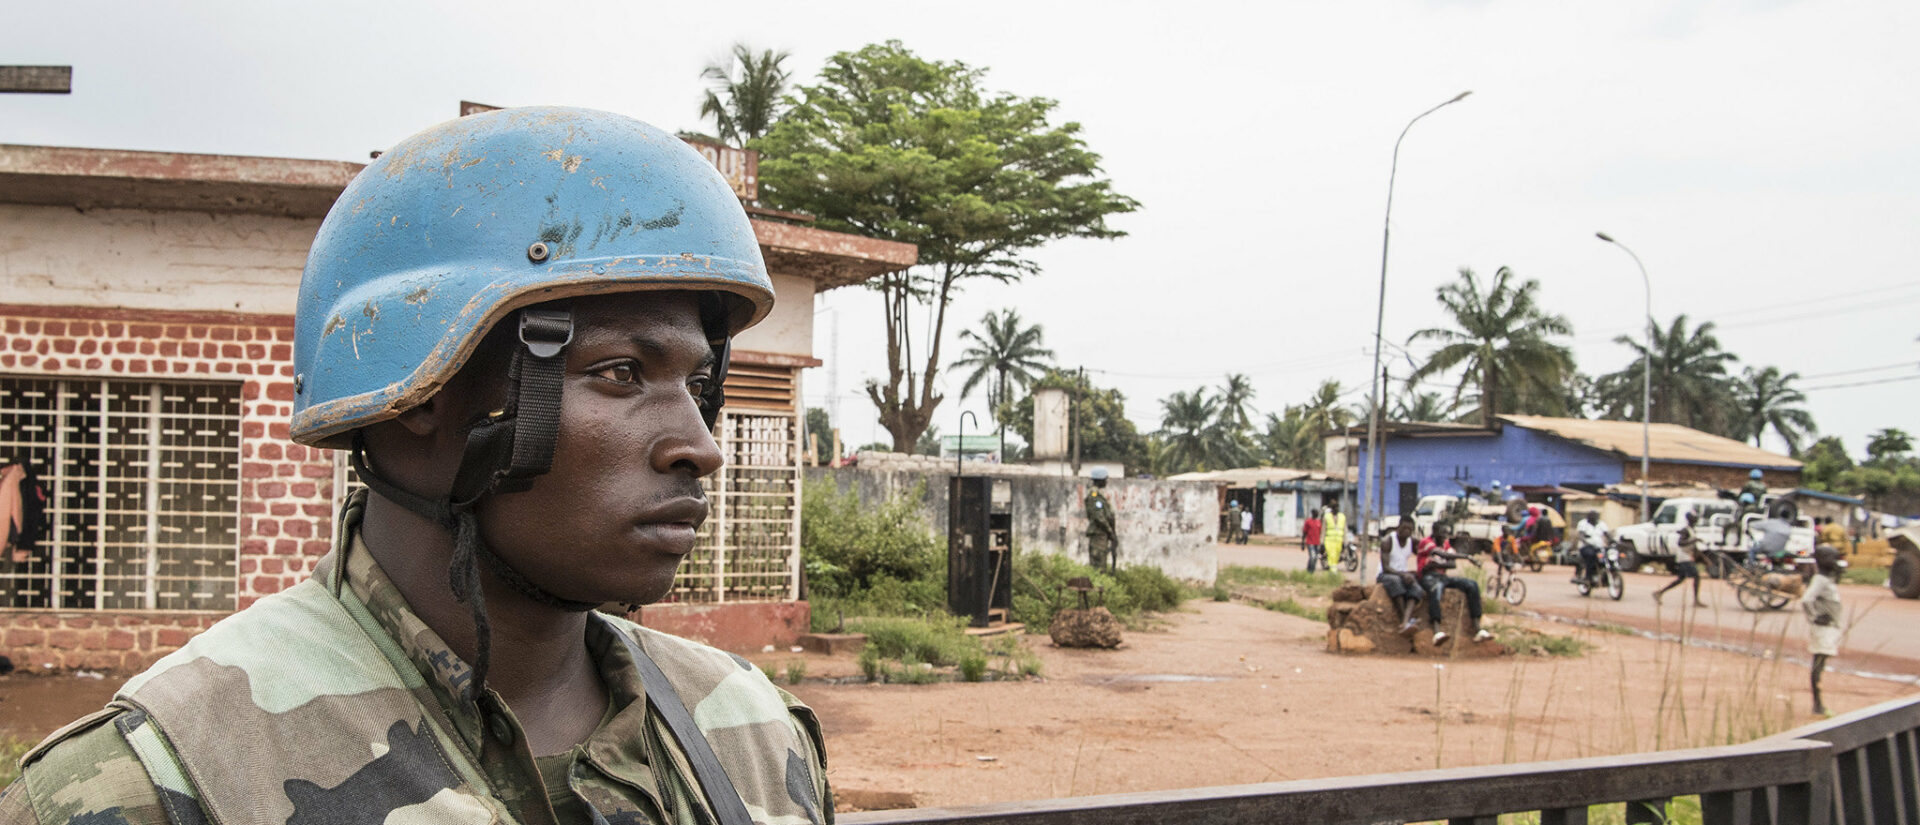 Le niveau d'insécurité est toujours élevé en Centrafrique | © UN Photos/Flickr/CC BY-NC-ND 2.0